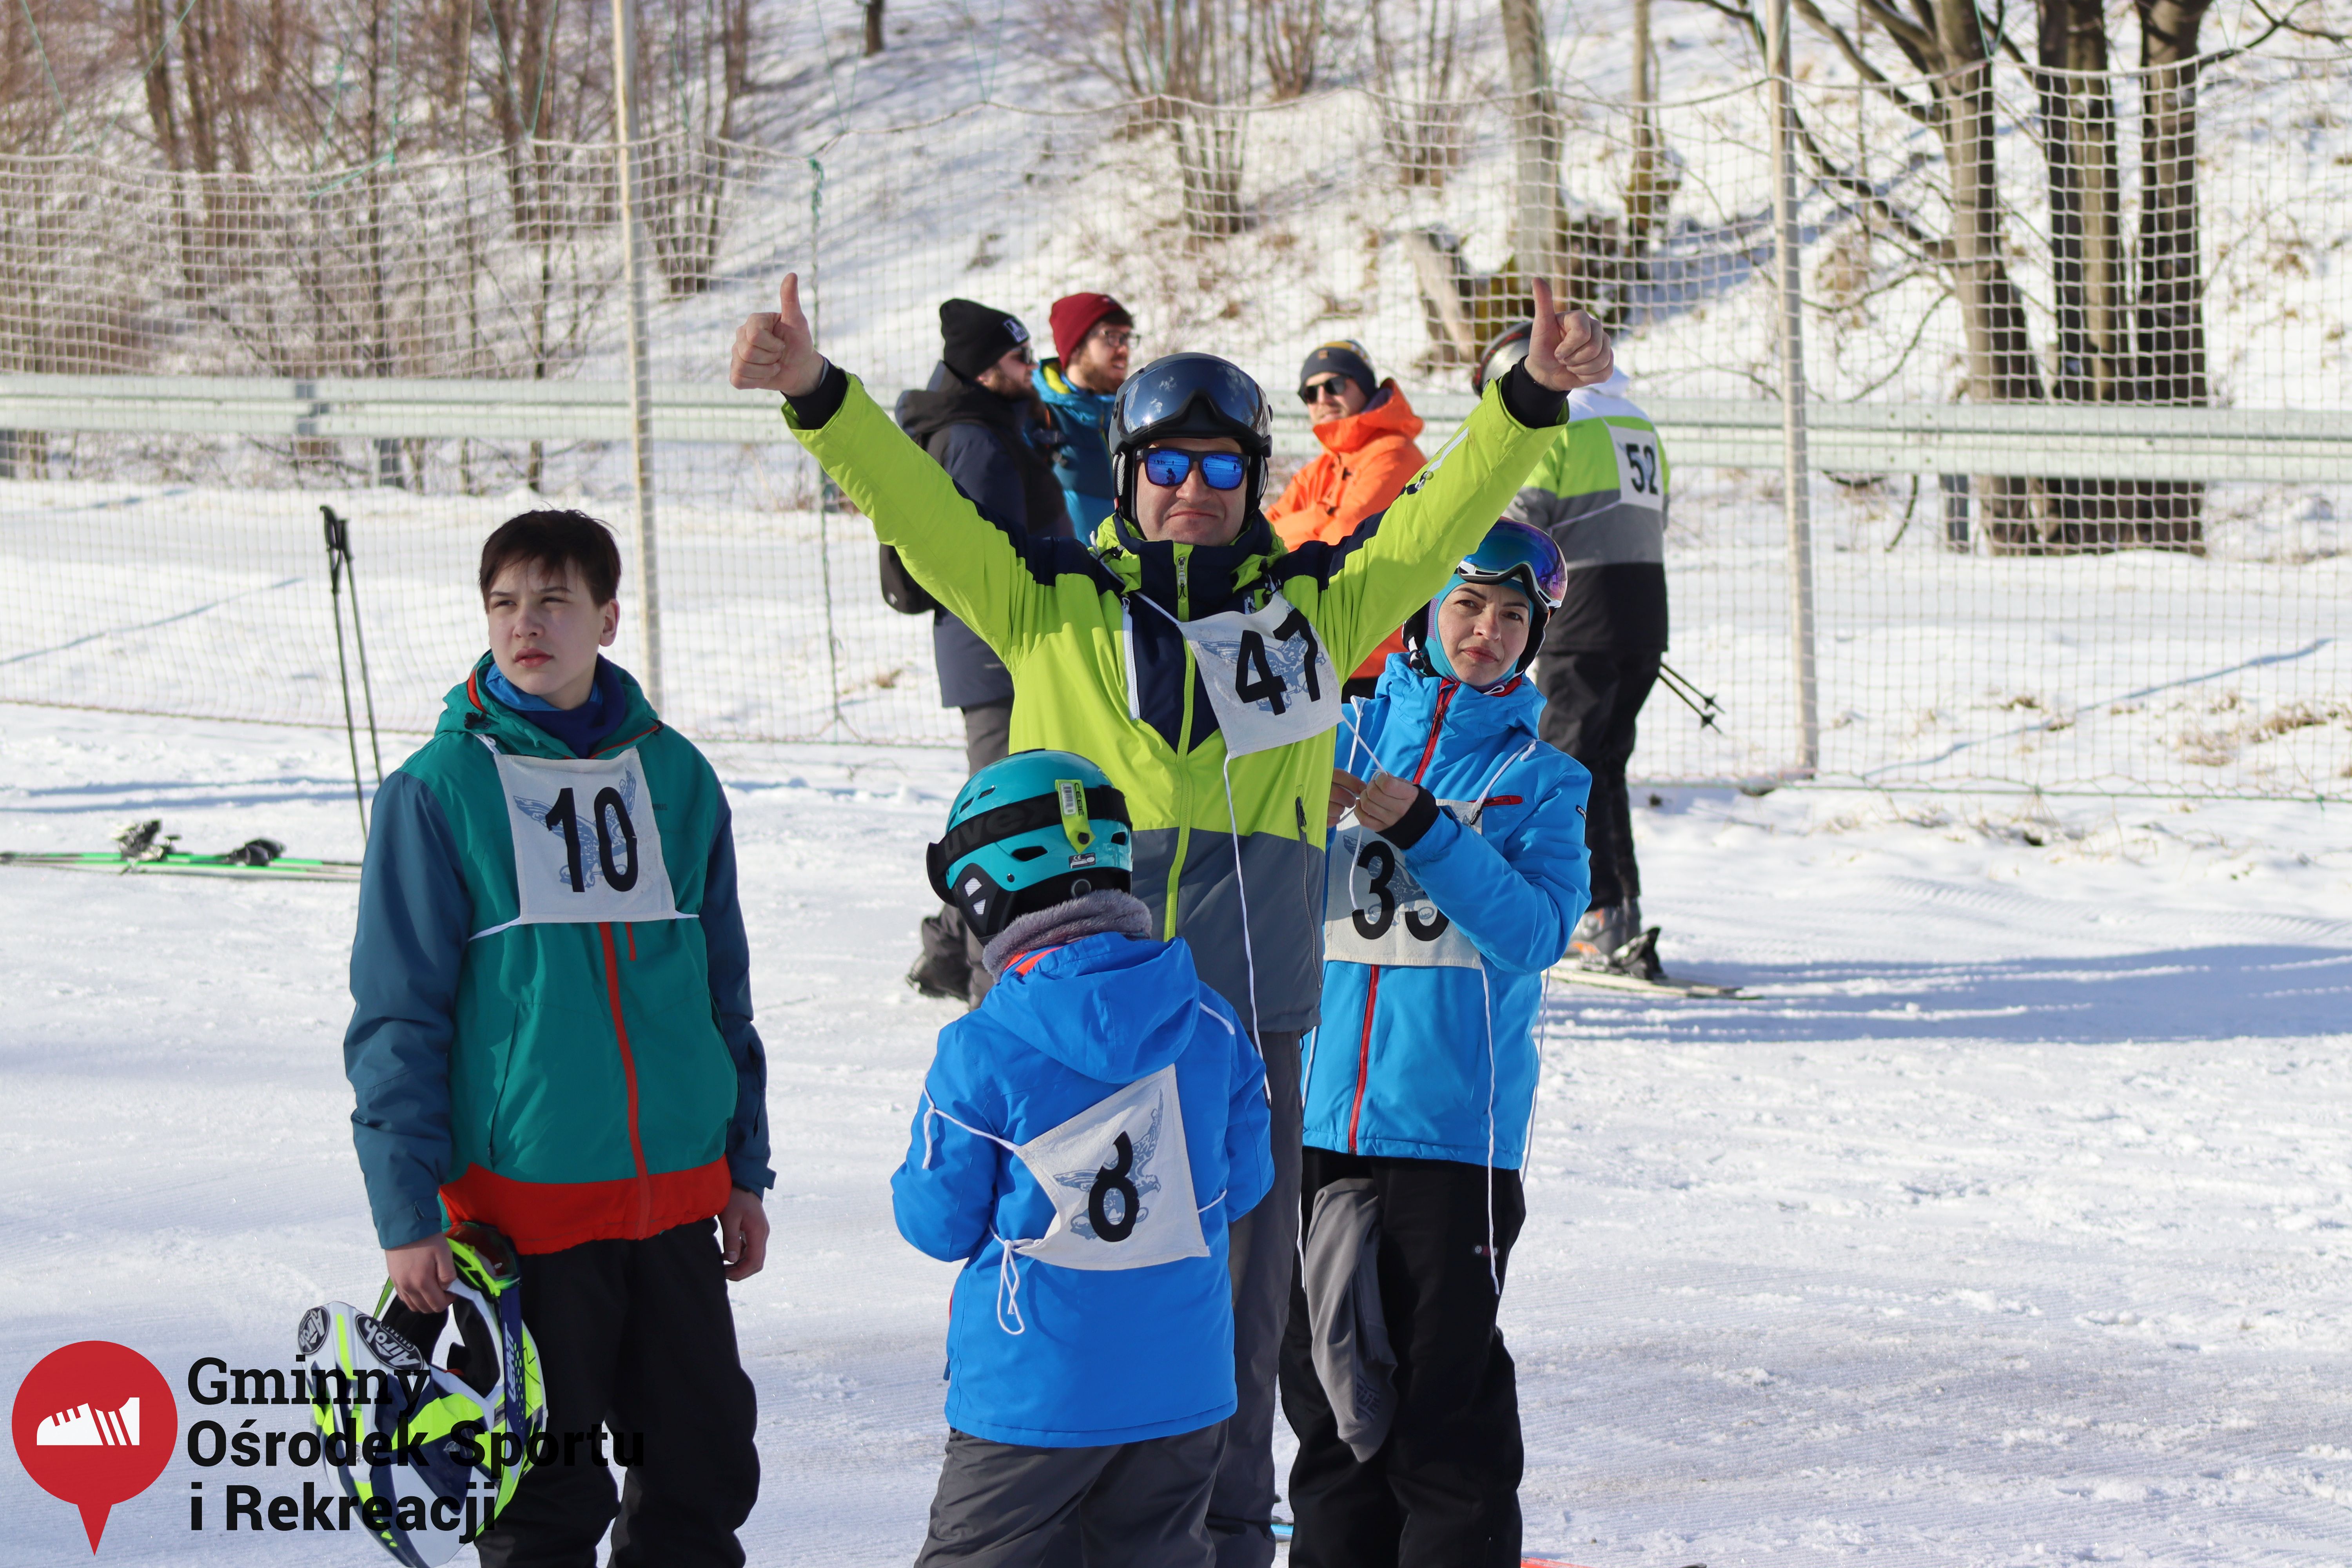 2022.02.12 - 18. Mistrzostwa Gminy Woszakowice w narciarstwie002.jpg - 2,14 MB